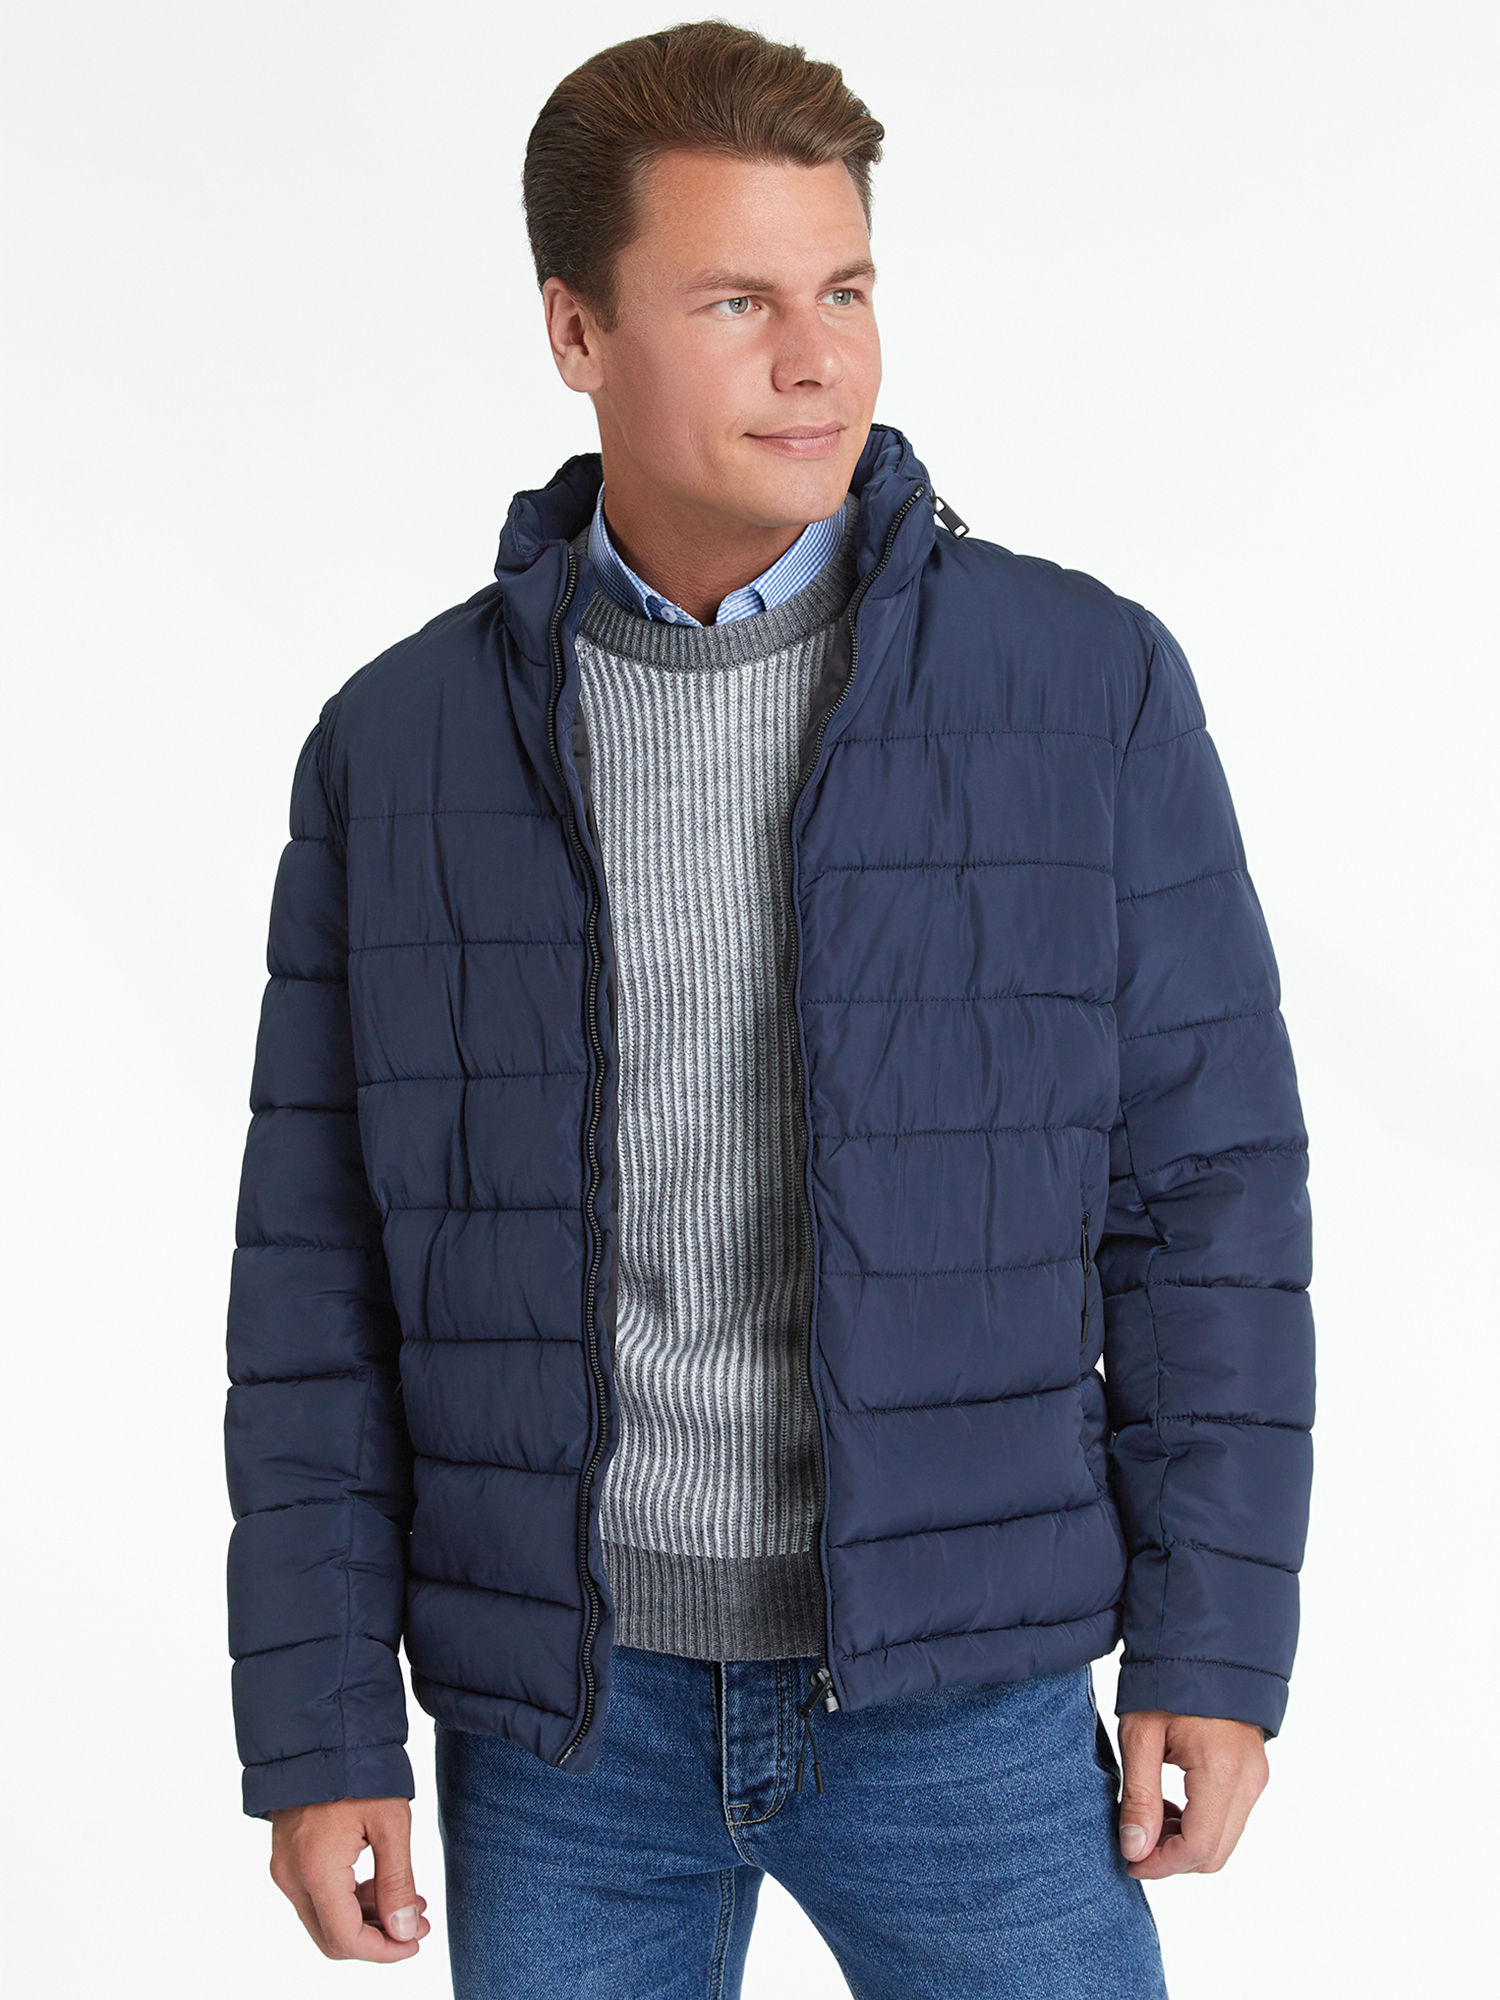 Куртка мужская oodji 1L111053M-1 синяя XL - купить в Москве, цены на Мегамаркет